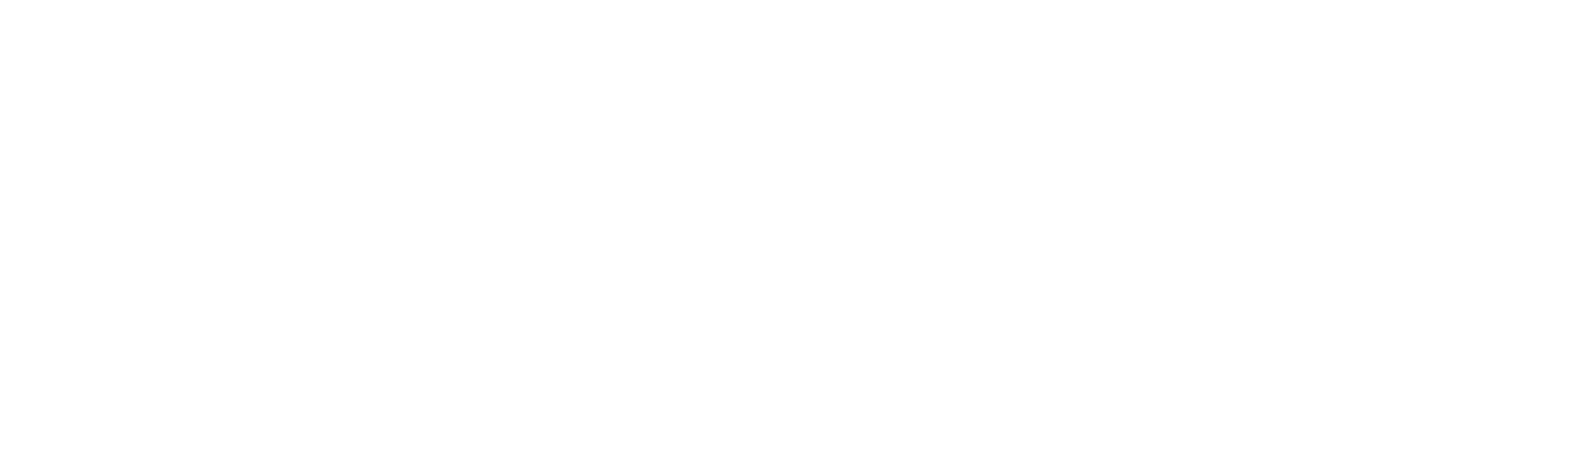 Cheniere Energy
 Logo groß für dunkle Hintergründe (transparentes PNG)